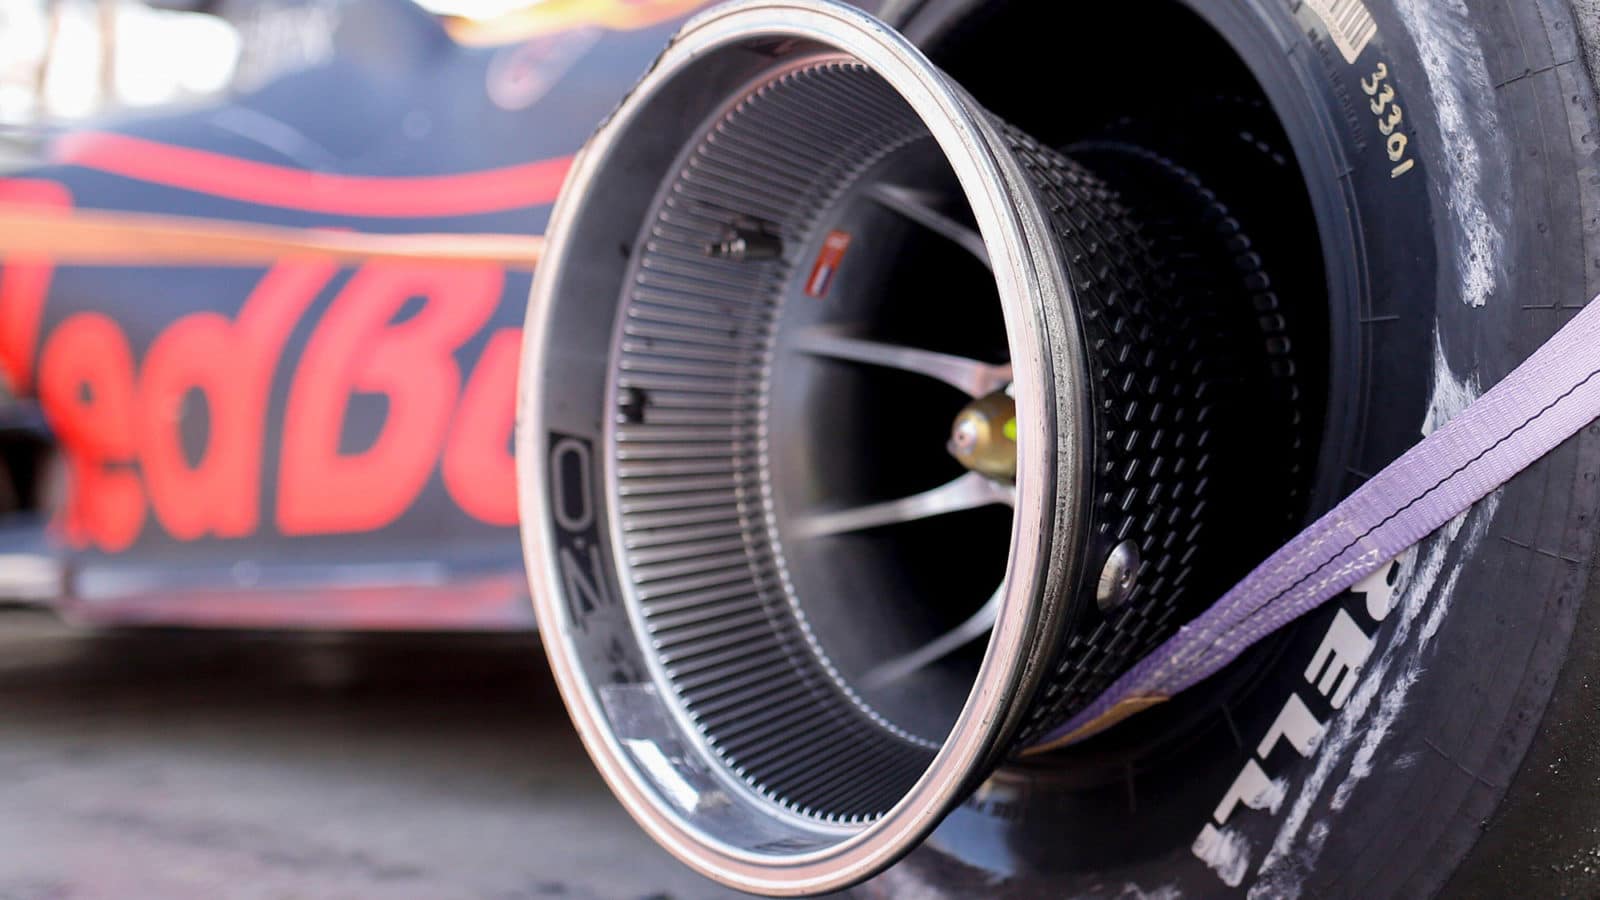 Finned wheel rim of Max Verstappen's Red Bull